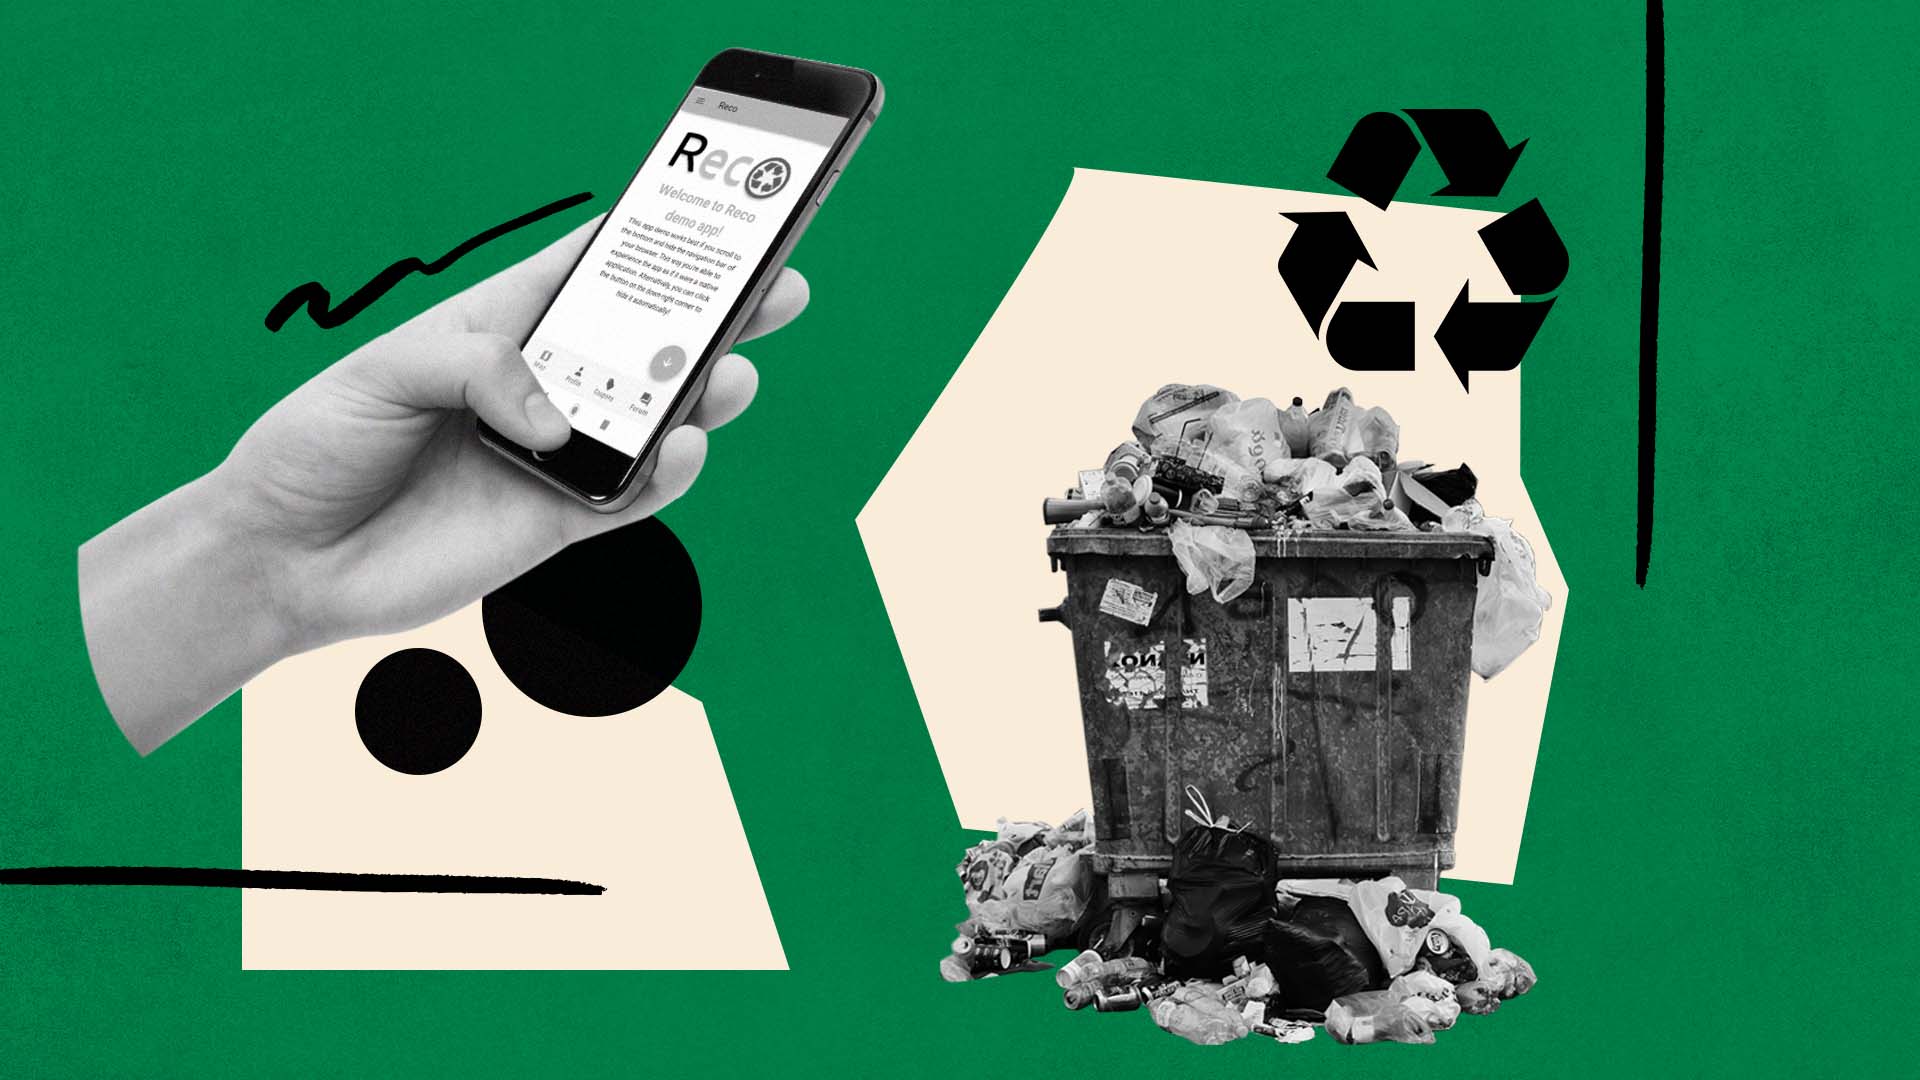 Seis estudiantes argentinos crearon una app para reciclar basura y buscan llevar a la práctica su solución